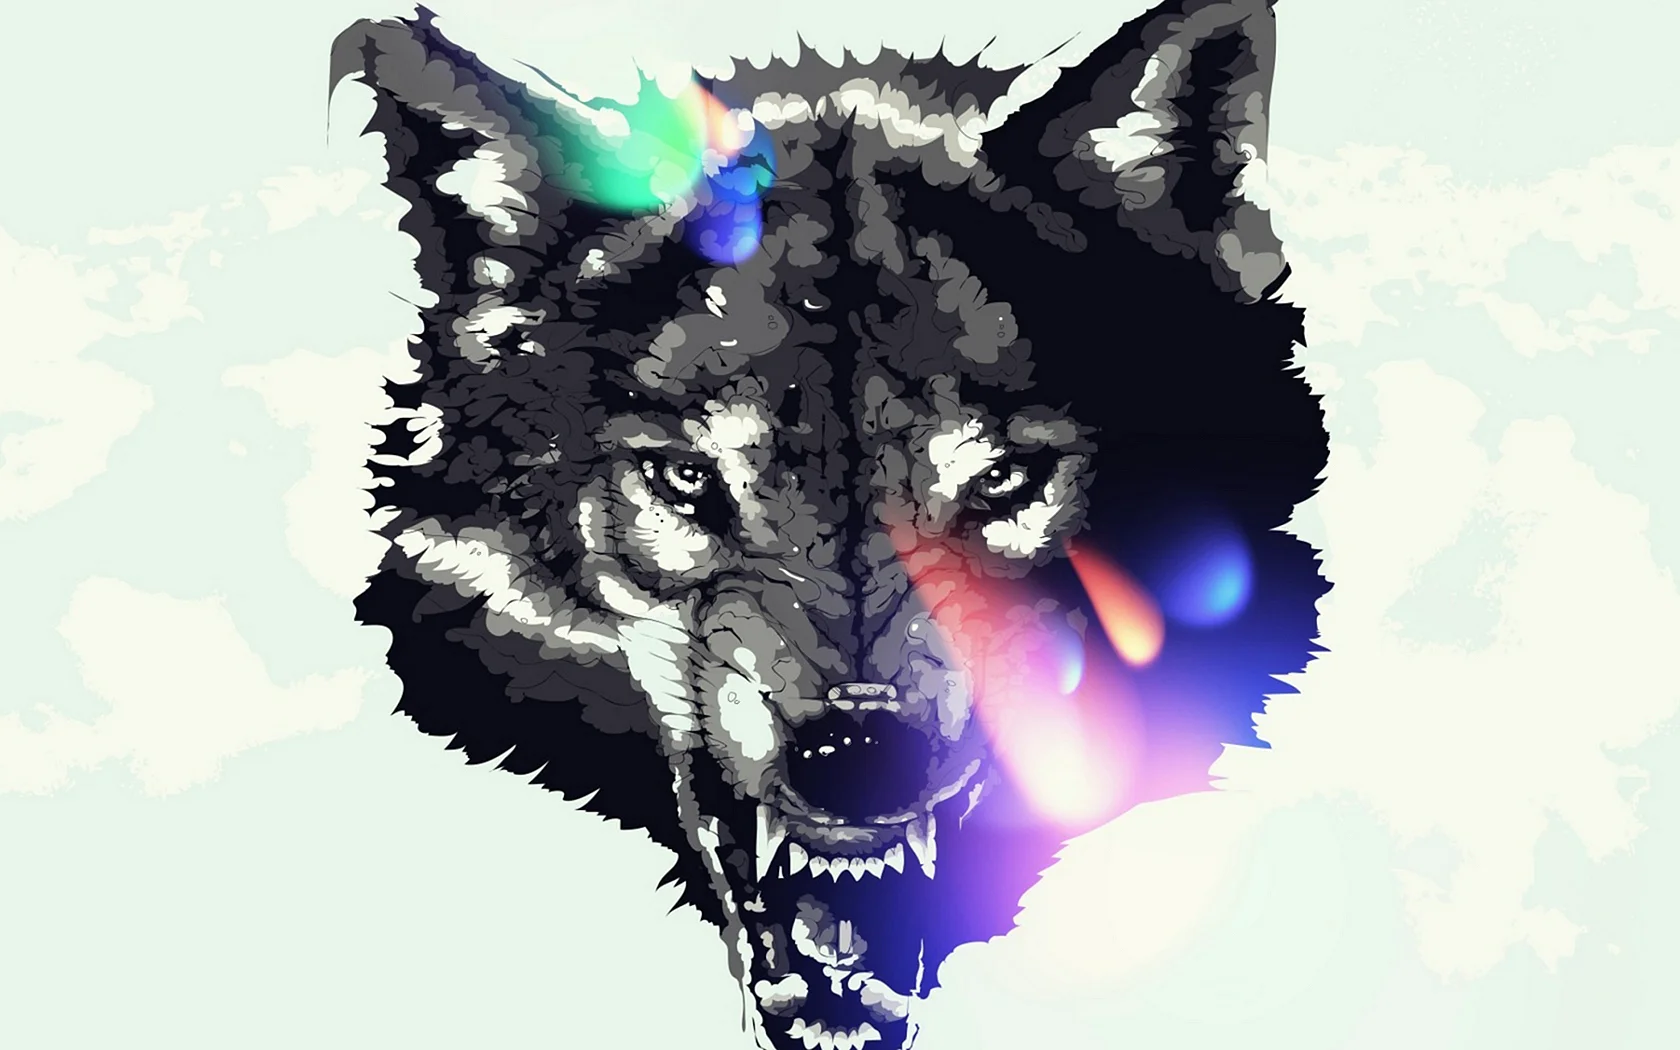 Wolf Art Wallpaper